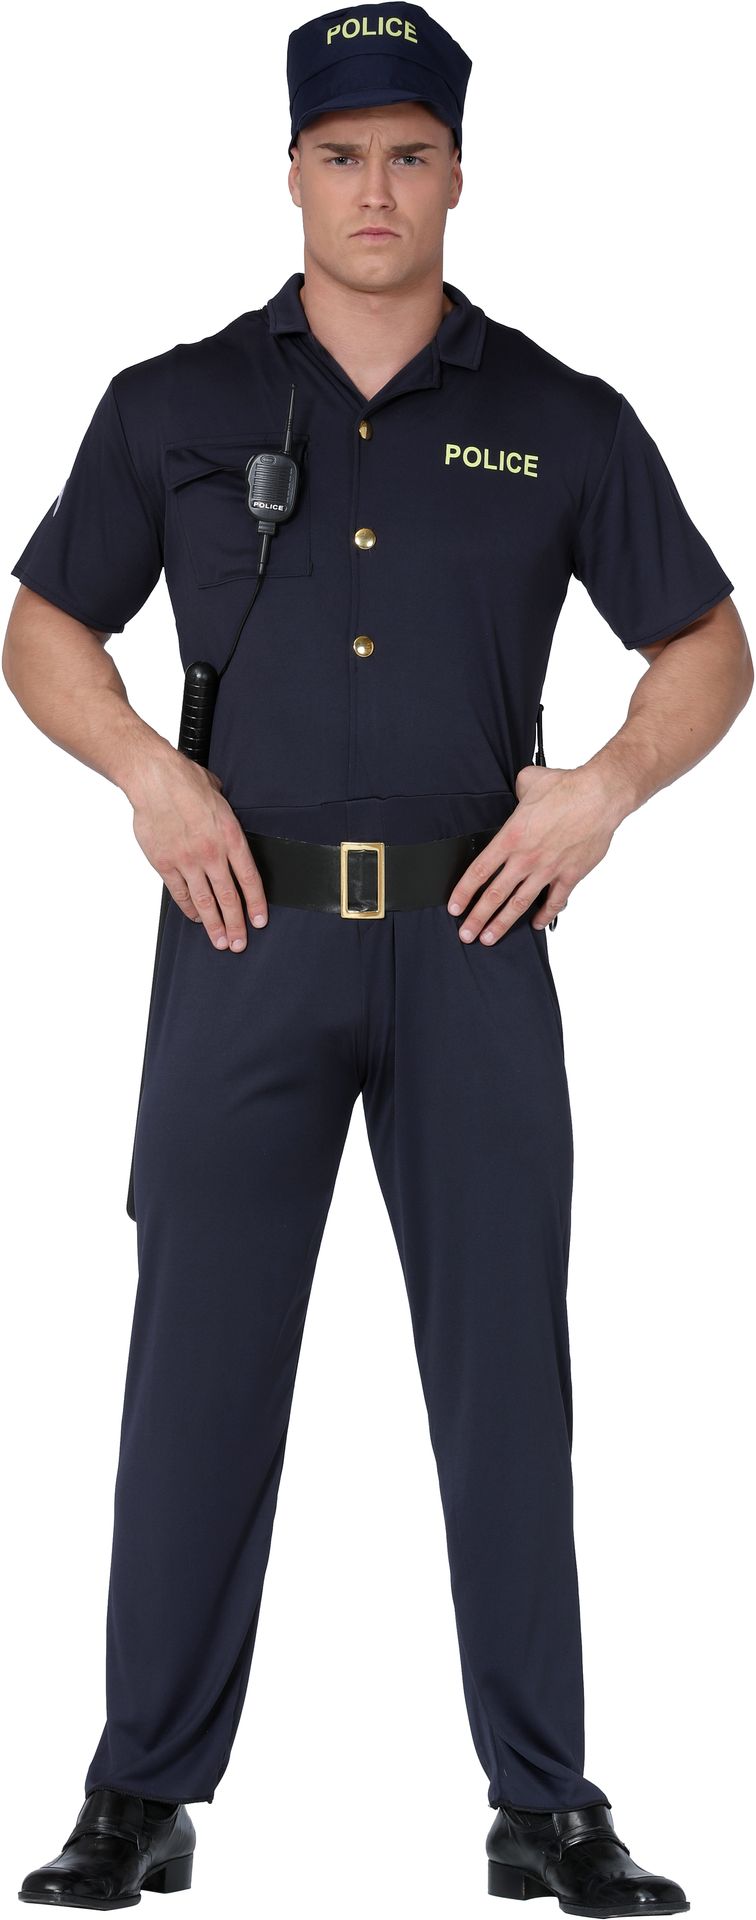 Politie kostuum mannen